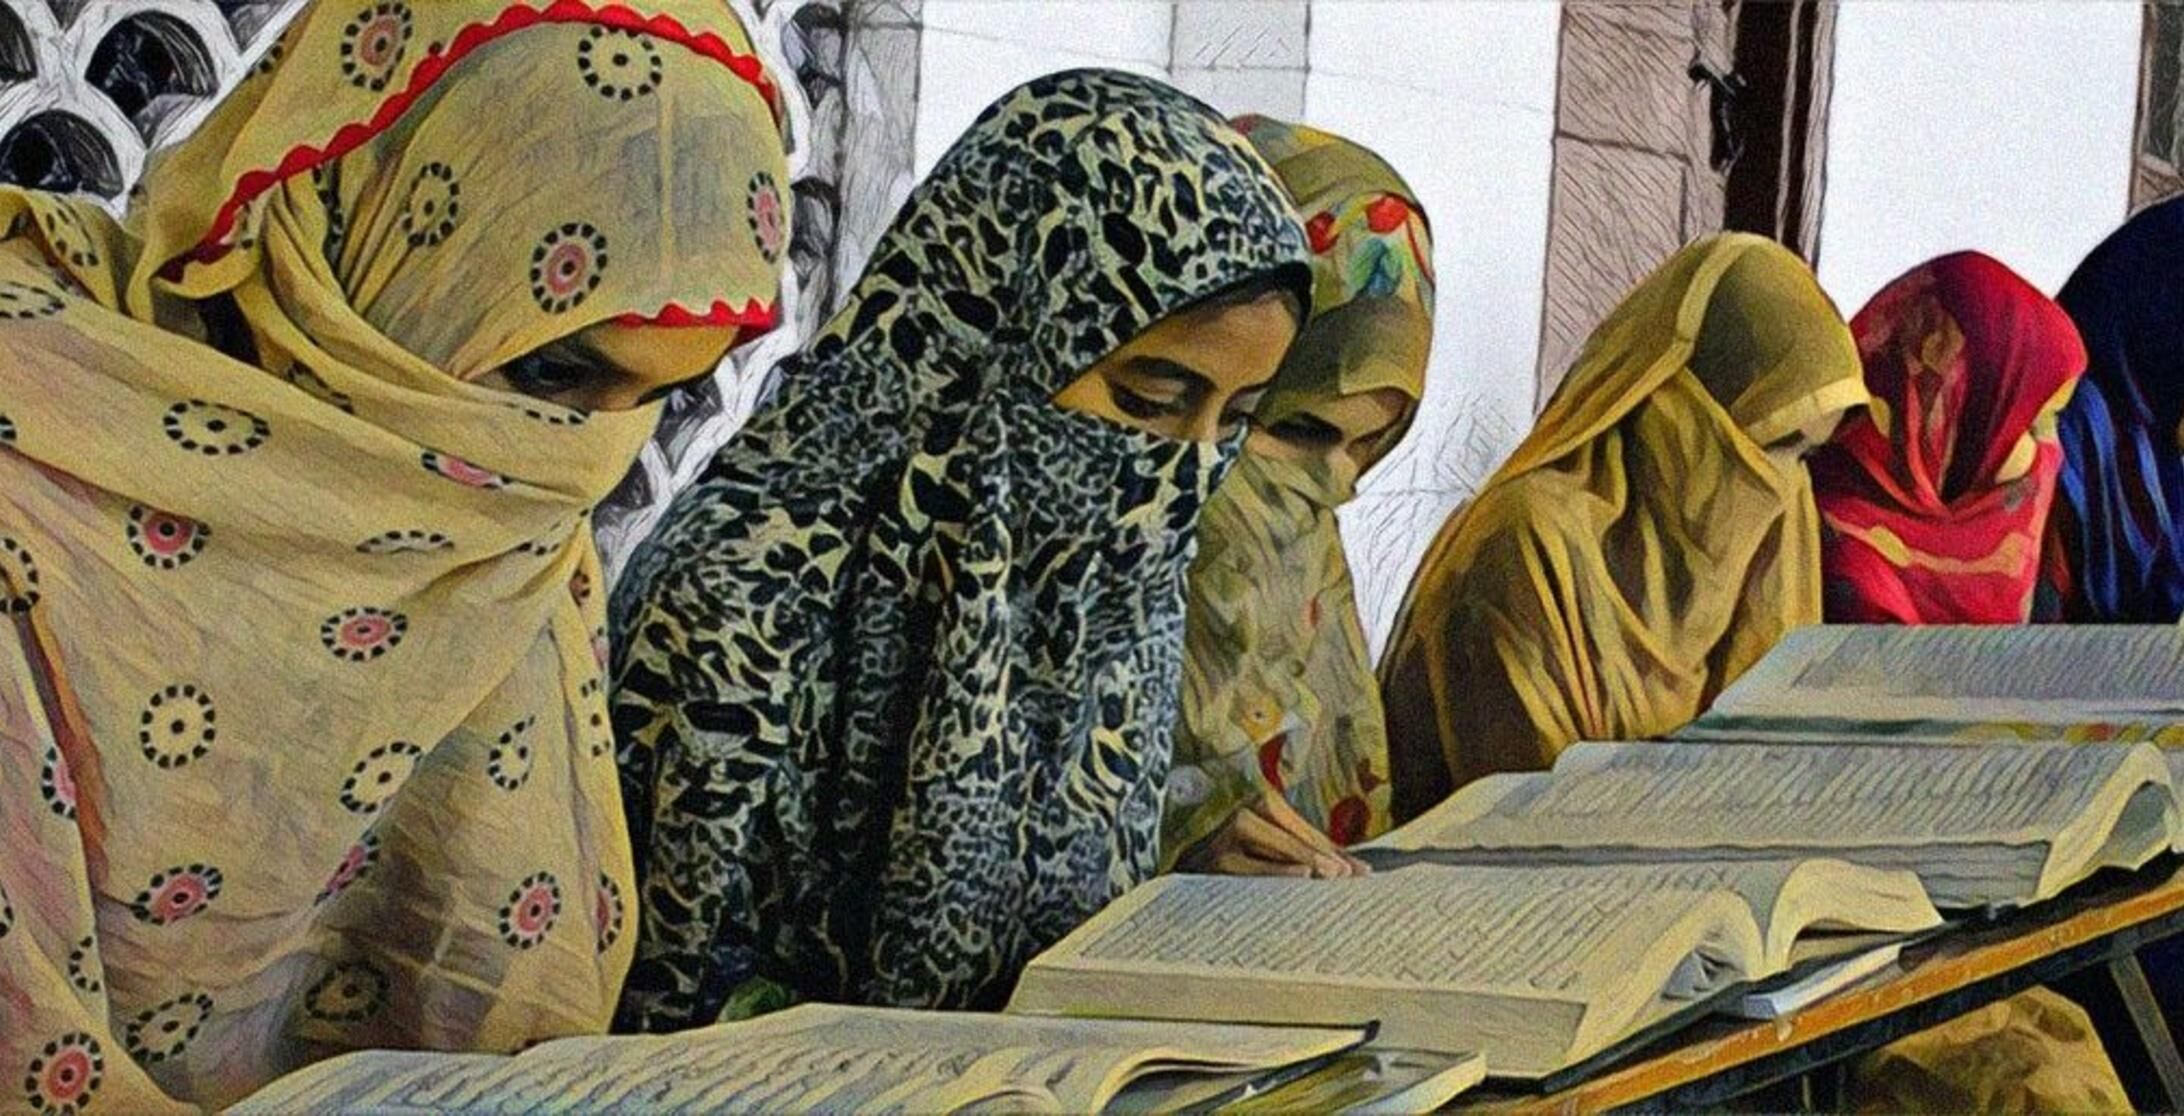 मुस्लिम लड़कियों की शिक्षा पर भाजपा सरकार का बड़ा हमला, असम में बंद होंगे सरकारी मदरसे